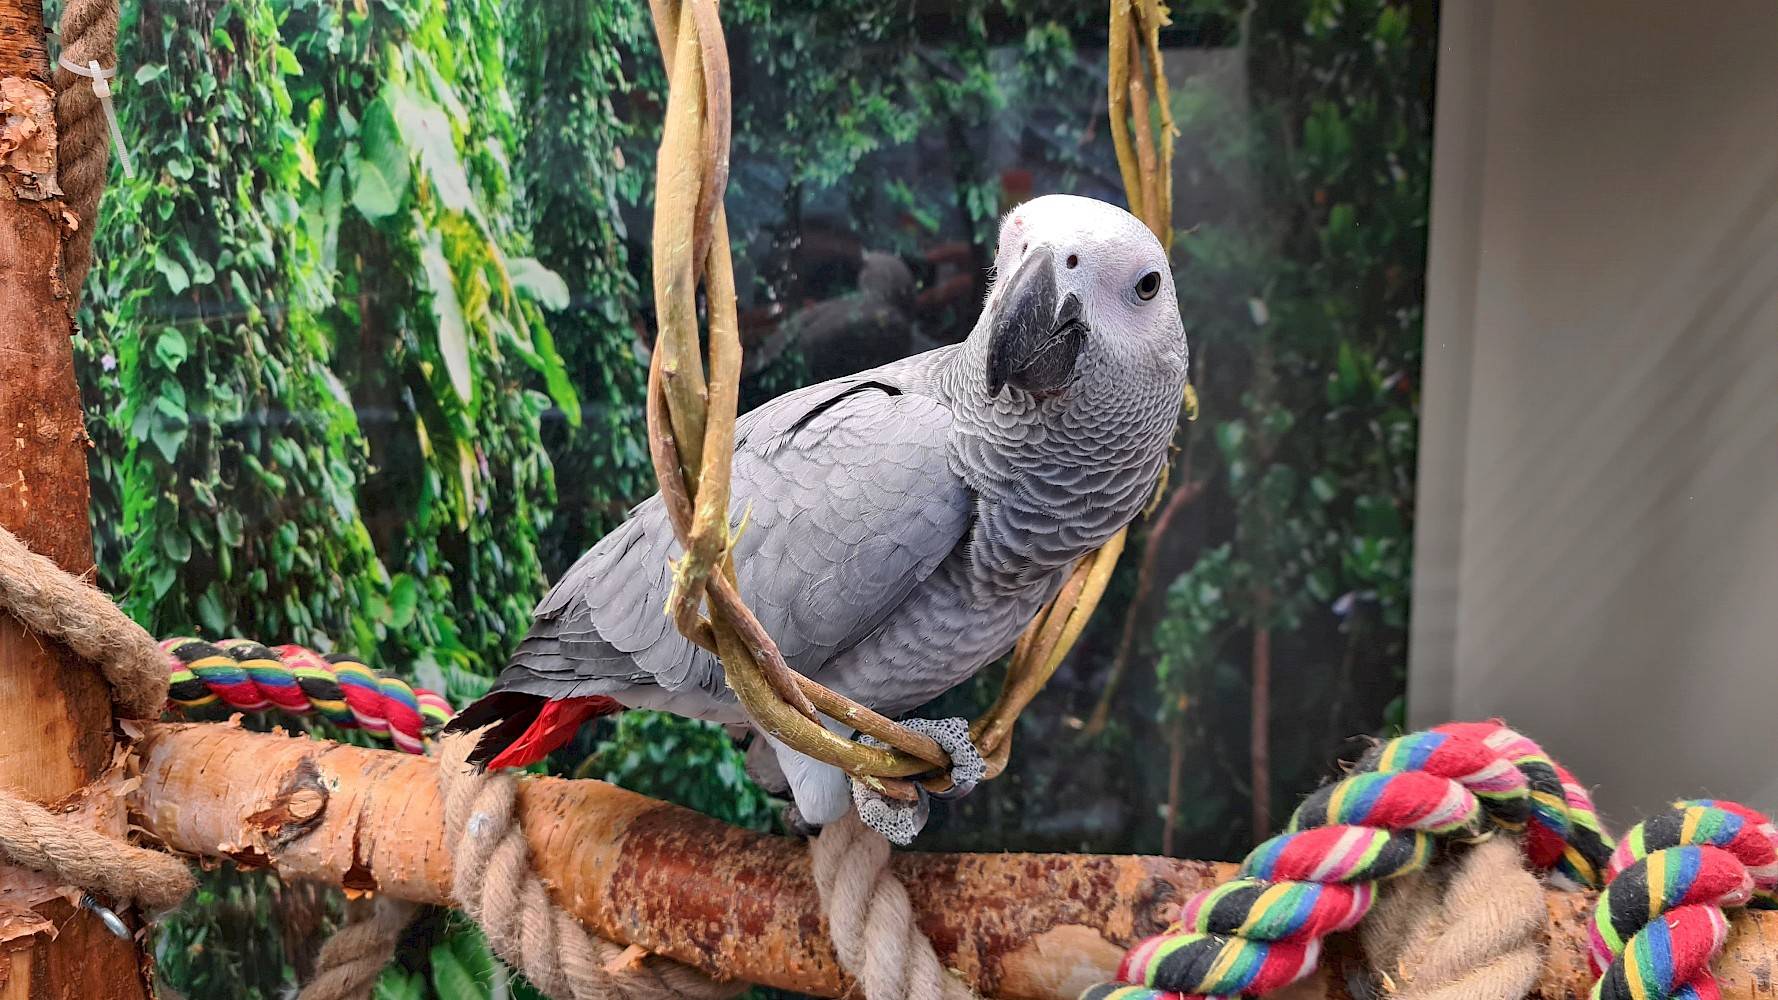 Grote grijze papegaai zit in ring geweven van dunne takjes, in kooi met touwen, takken en planten